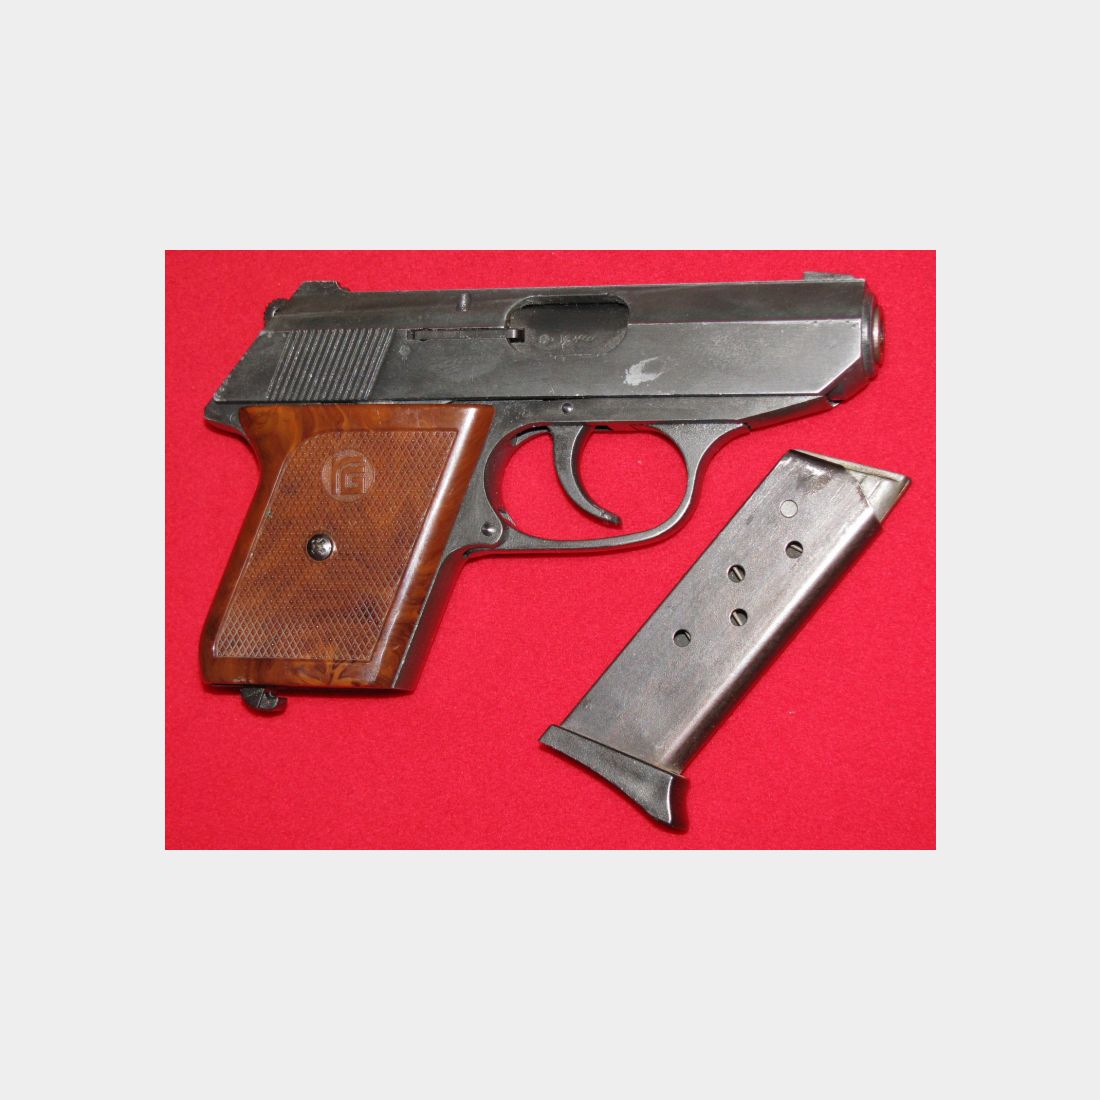 RÖHM Schreckschuss - Pistole, eine RÖHM RG 9 mit der PTB 232, Bitte ansehen